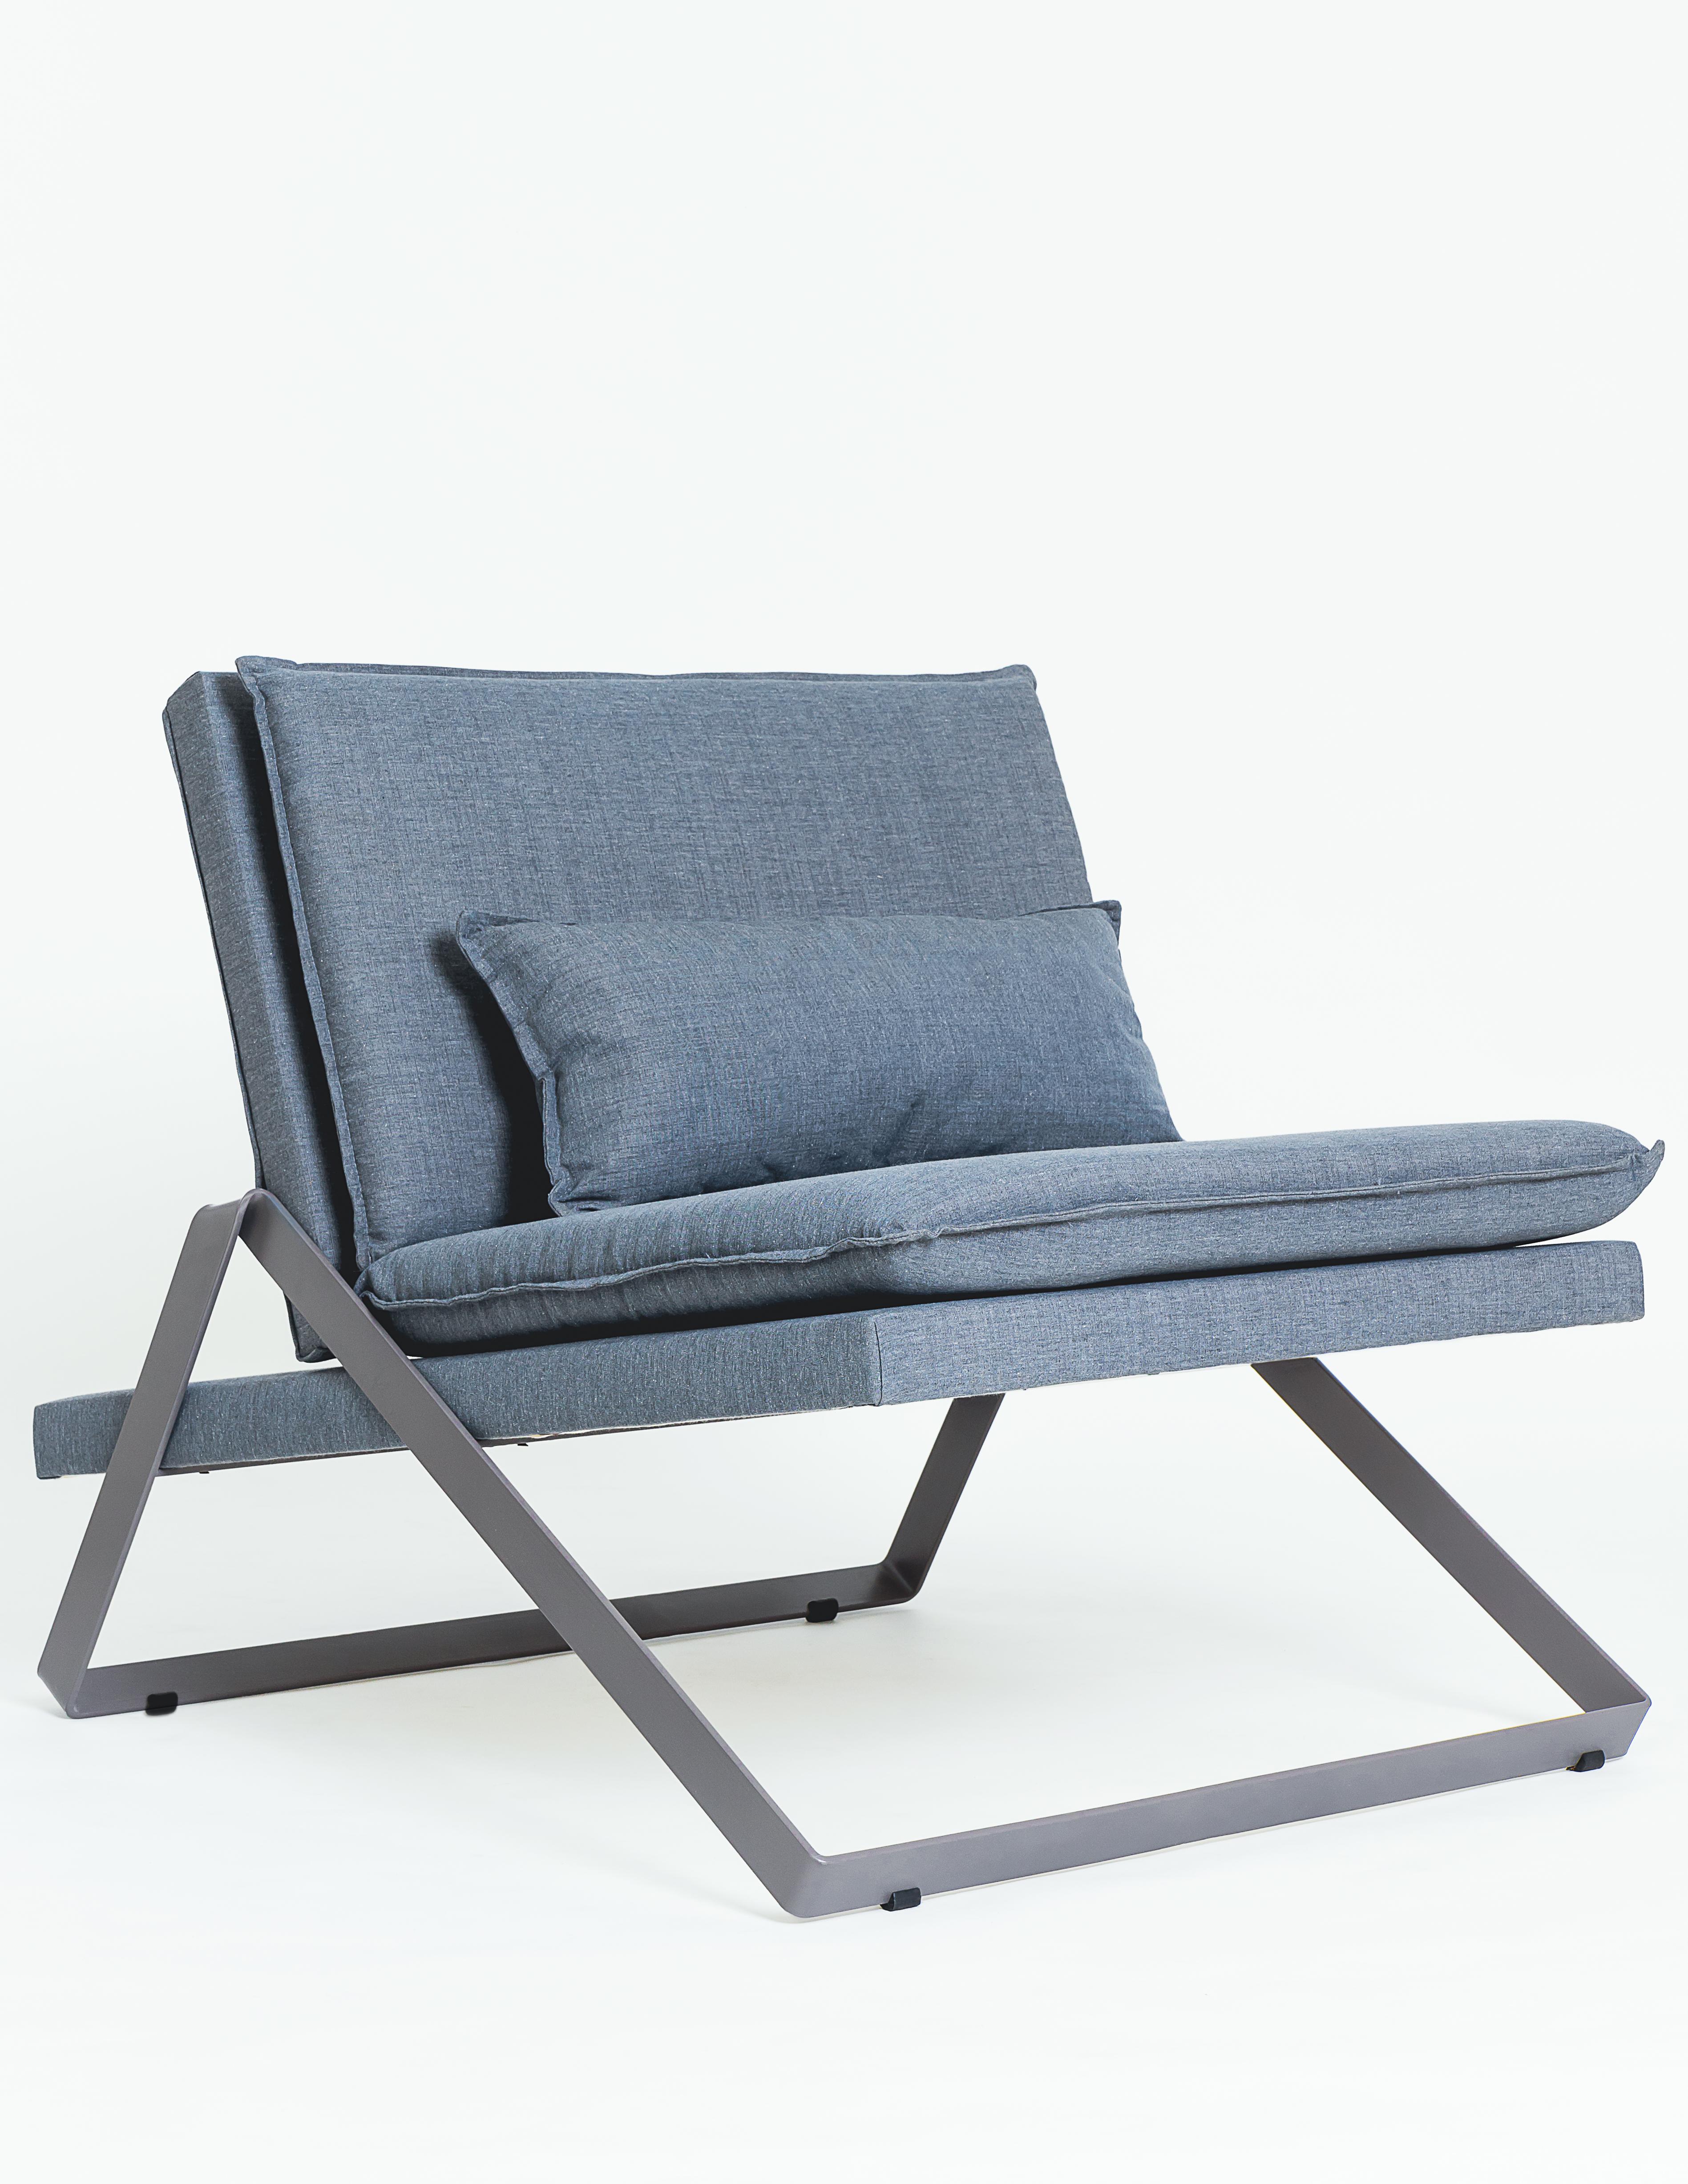 La chaise Dobra fait partie de la ligne de mobilier Dobra, conçue à partir d'une barre d'acier continue pliée pour créer des pieds et des cadres pour les différents composants.
